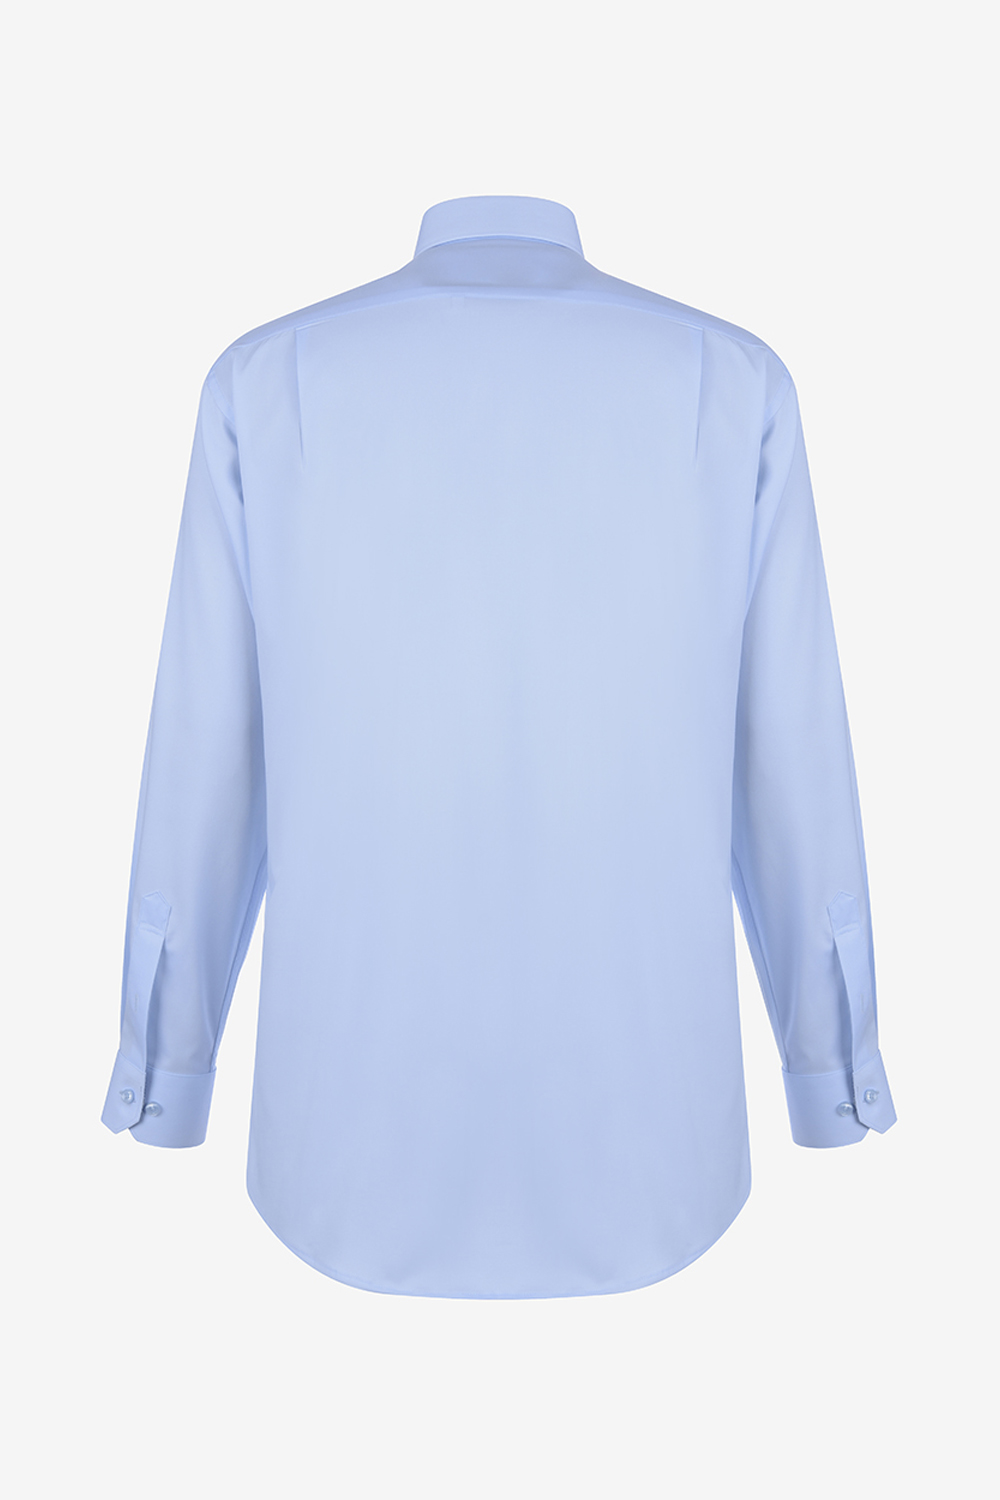 [공식스토어] 면혼방 스트레치 배색 일반핏 셔츠 블루 YJ3SUR501BL